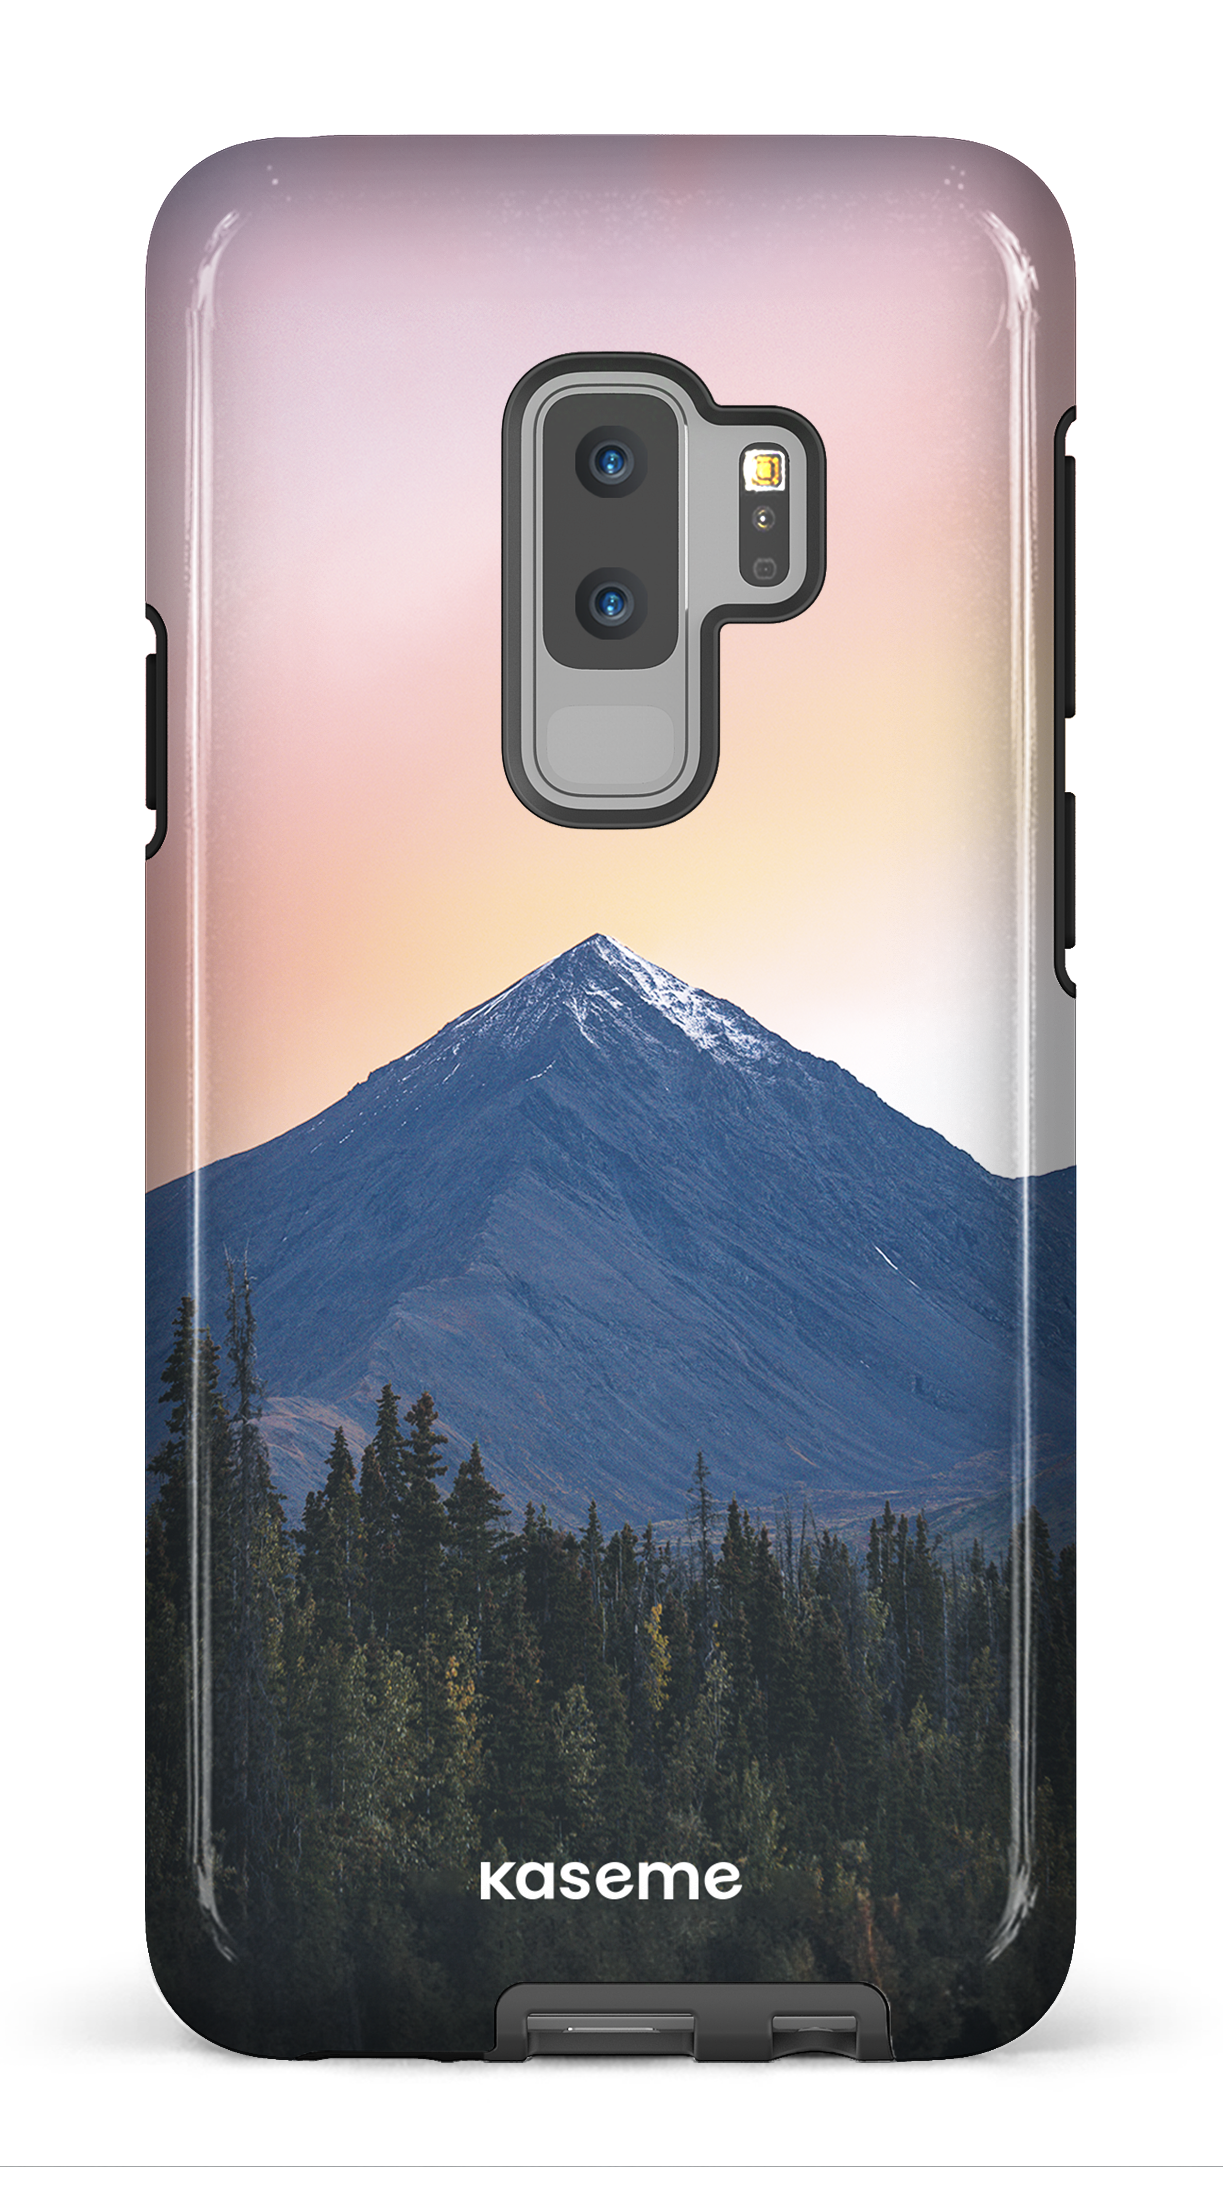 Pastel Peak by Yulneverroamalone - Galaxy S9 Plus